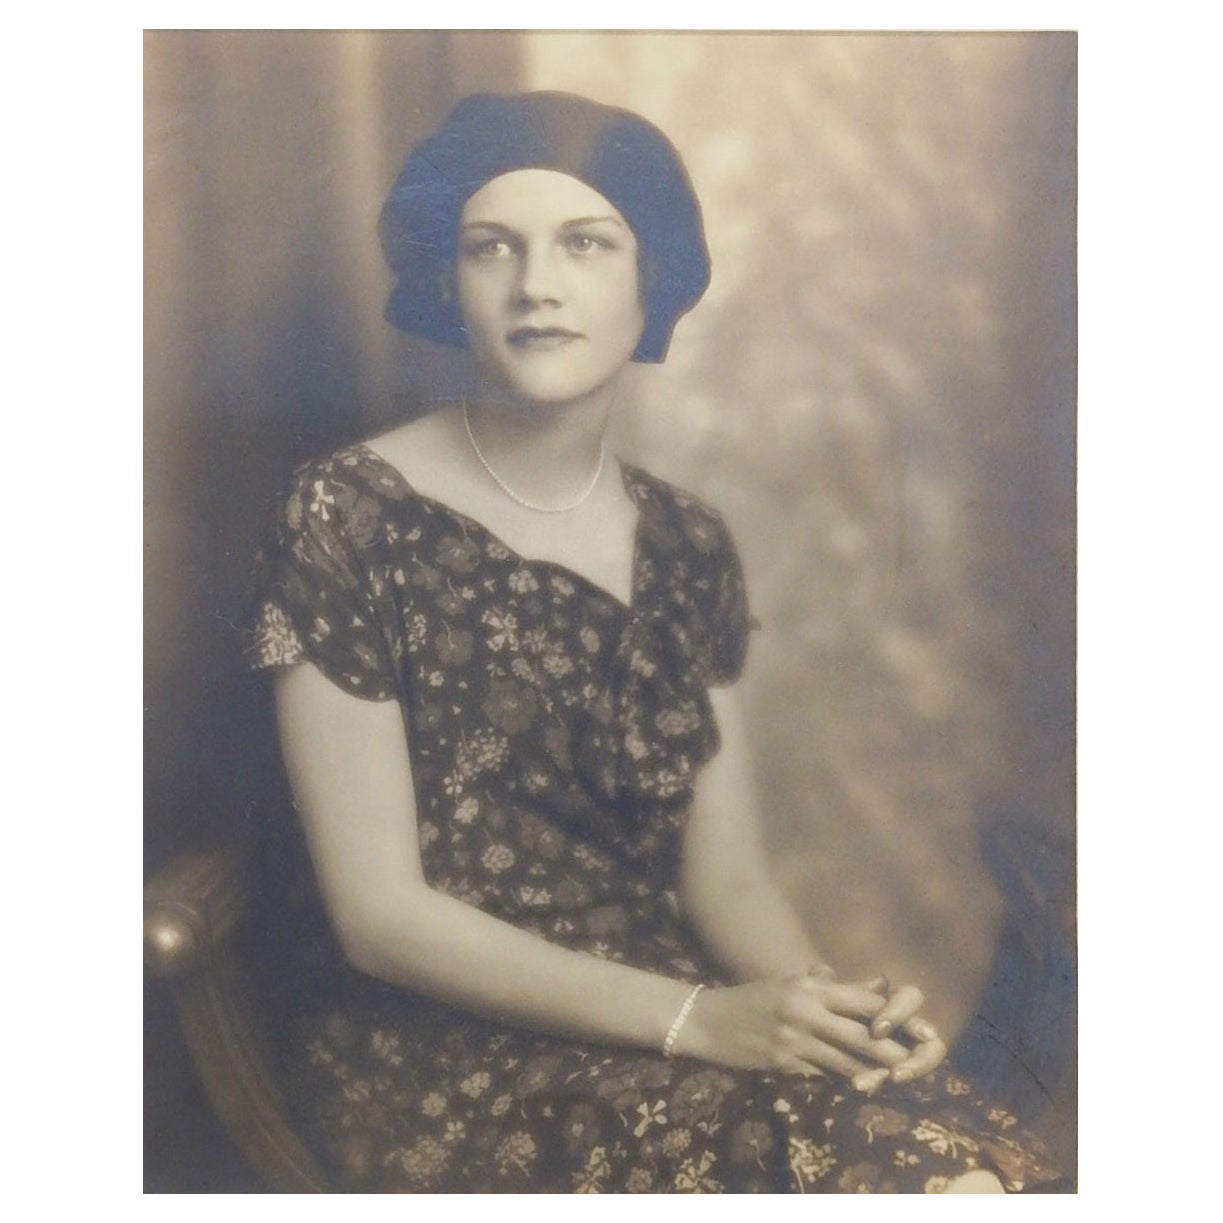 Vintage 1920s Glamourous Woman Portrait Photograph